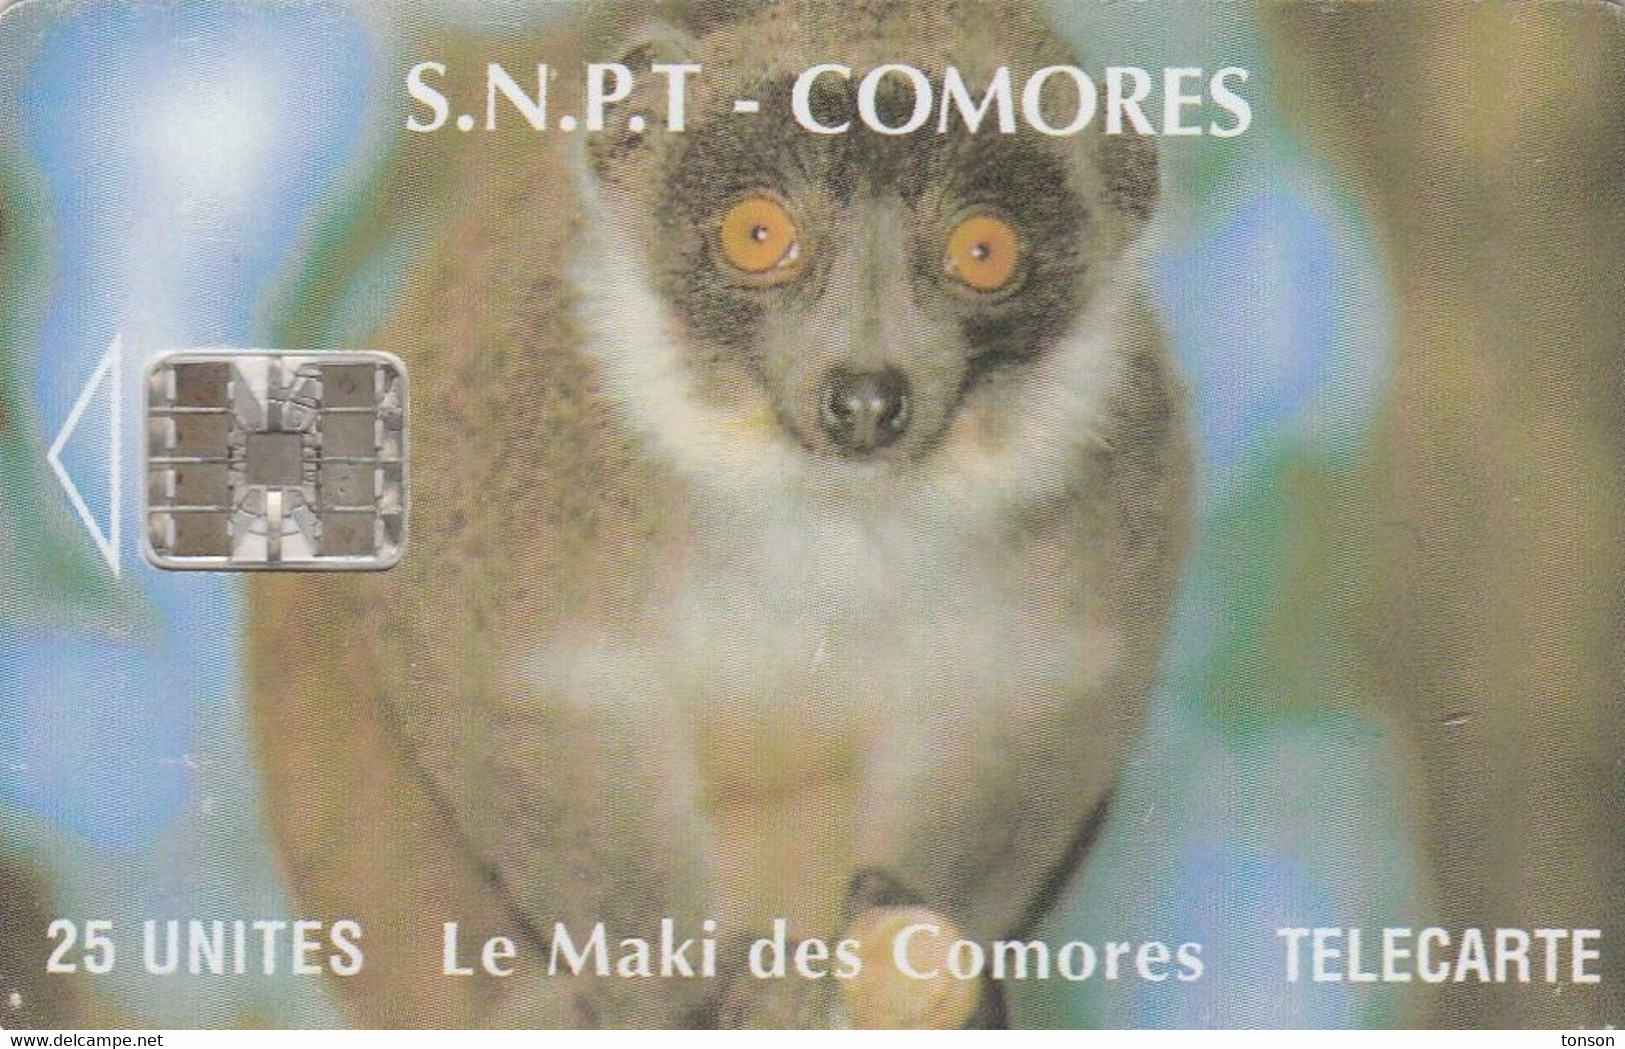 Comoros, KM-OPT-0008E, Le Maki Des Comores (SC7 - With Moreno Logo), Monkey, 2 Scans.   CN Bottom Right - Comoros